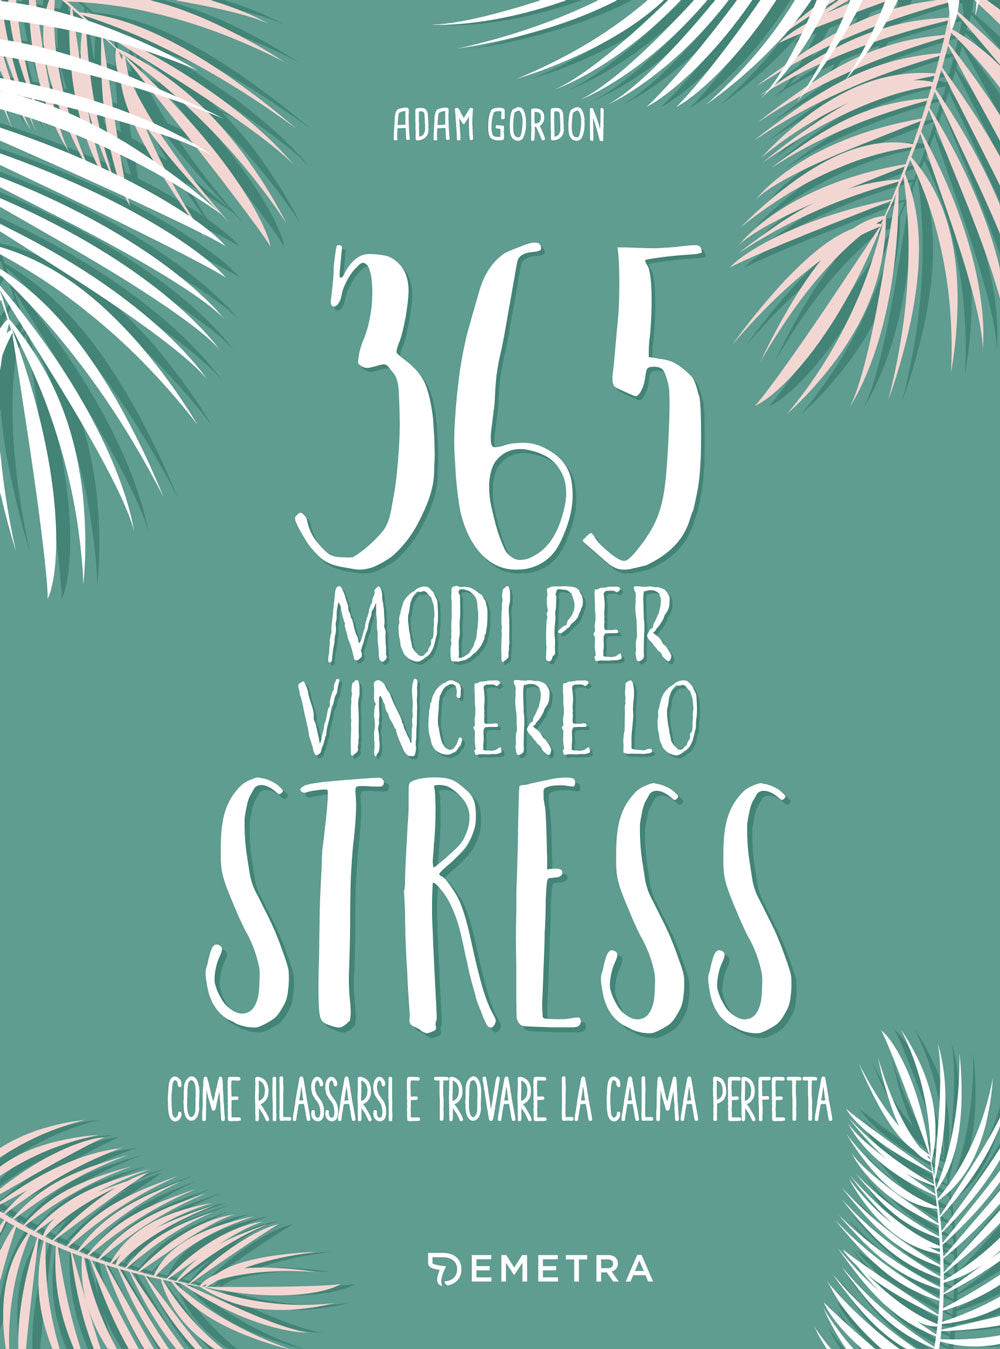 365 modi per vincere lo stress::come rilassarsi e trovare la calma perfetta